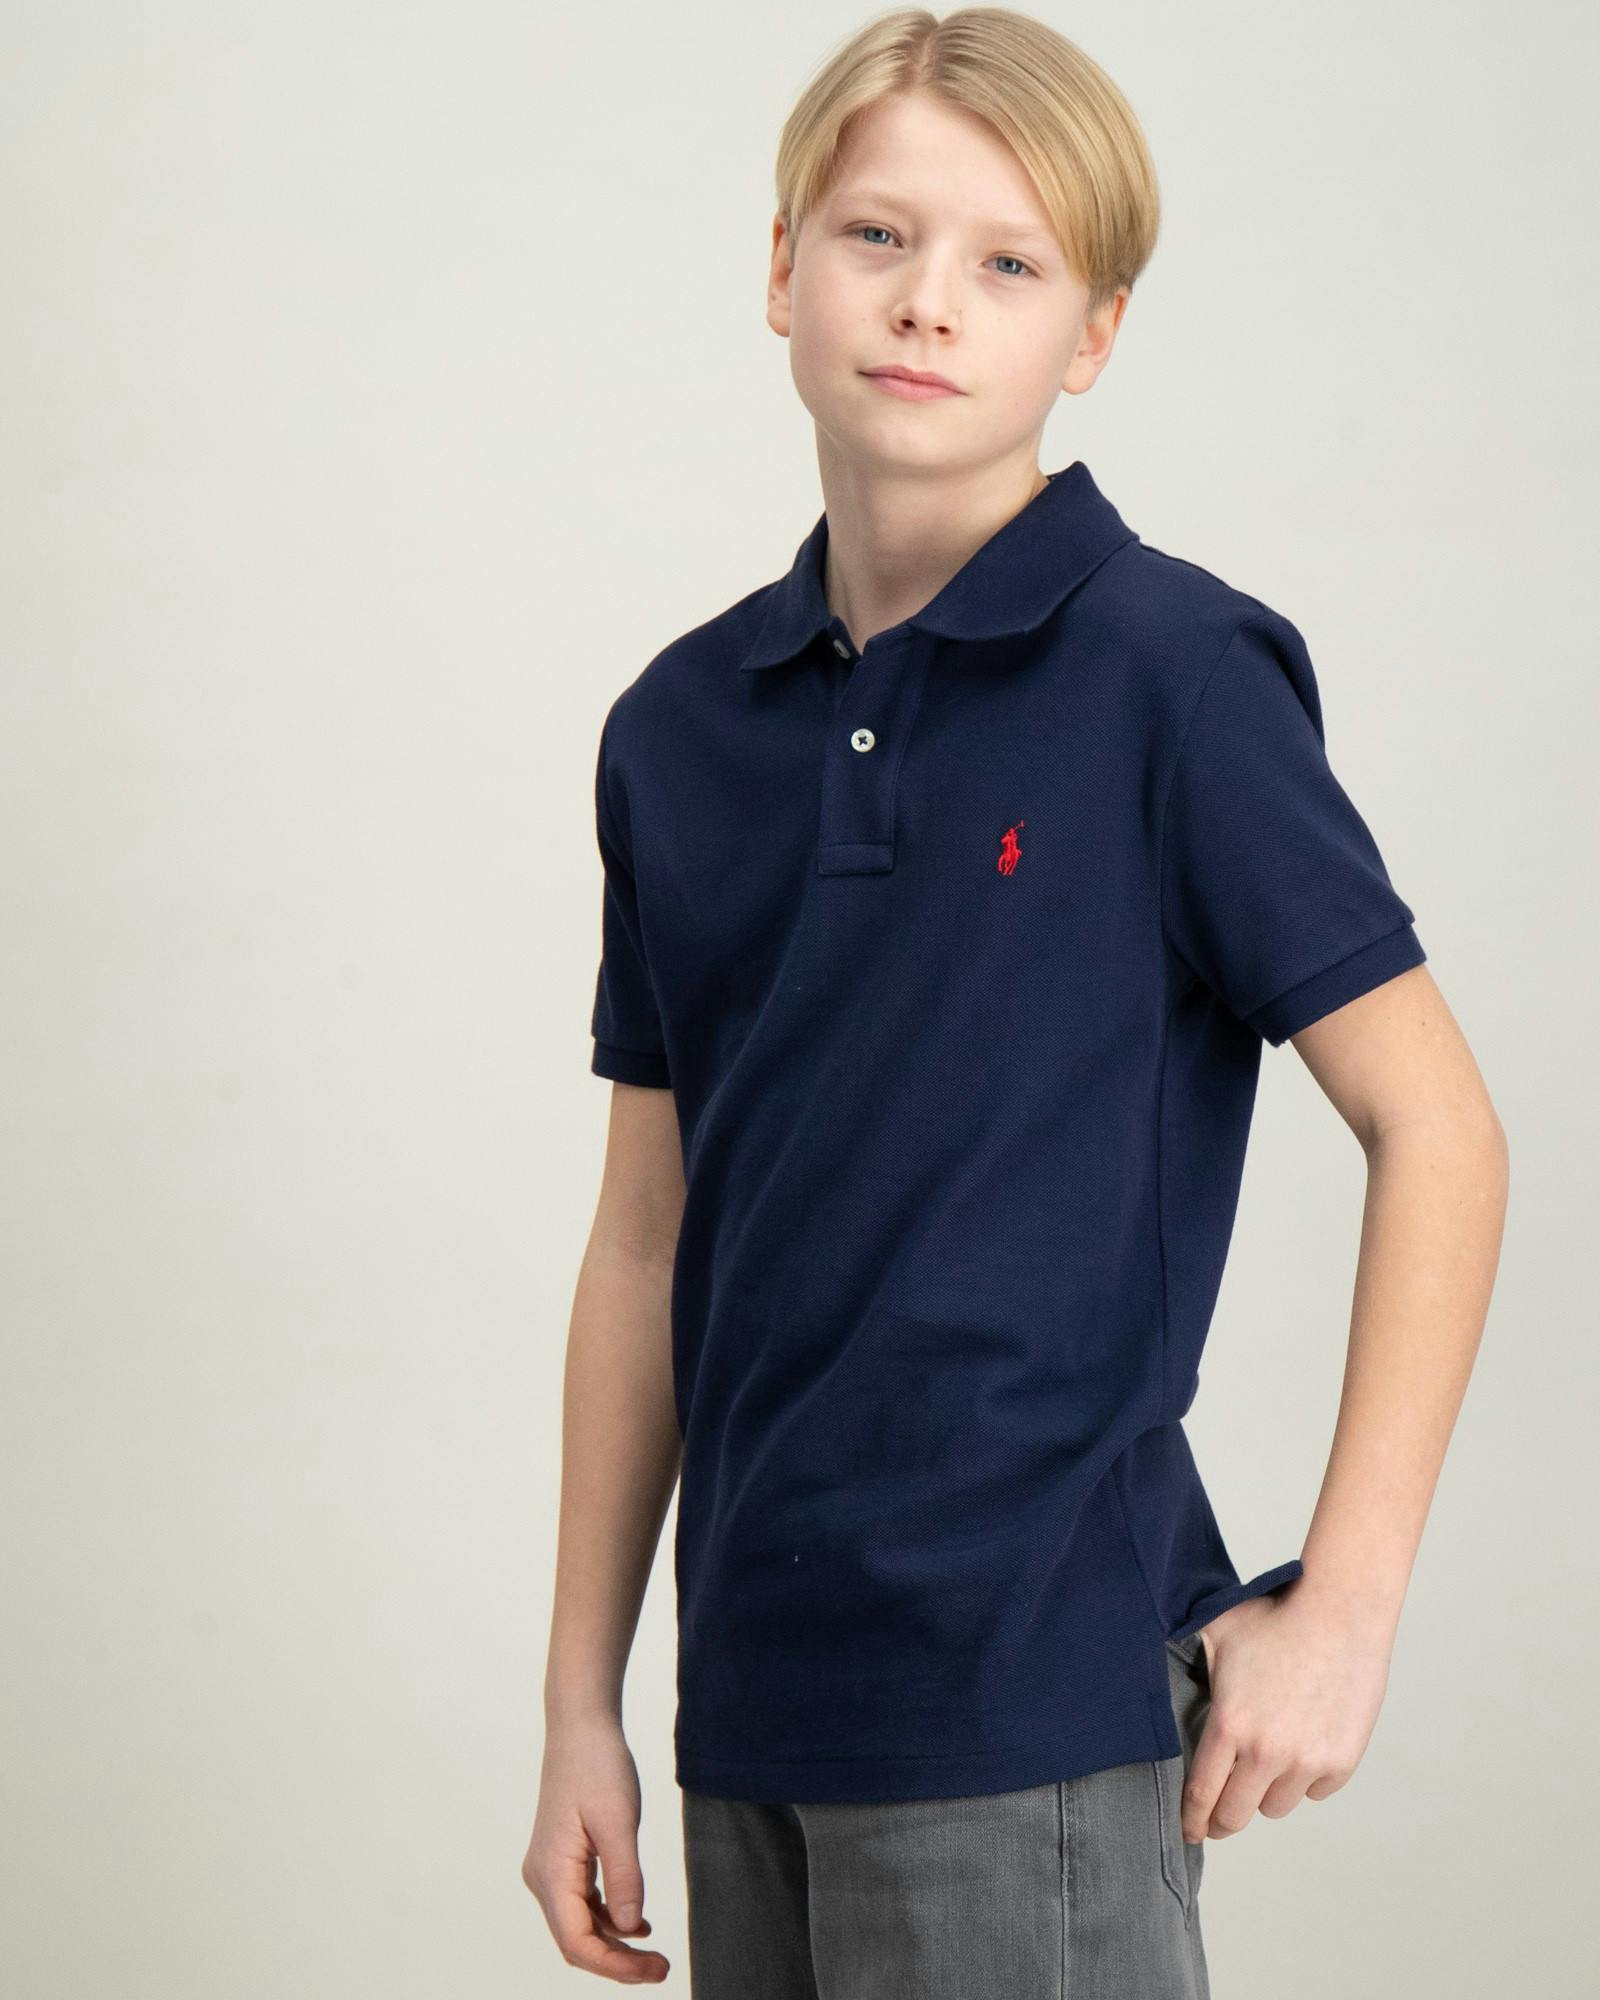 Polo T-Shirt & Pique Hemden für Kinder und Jugendliche | Kids Brand Store